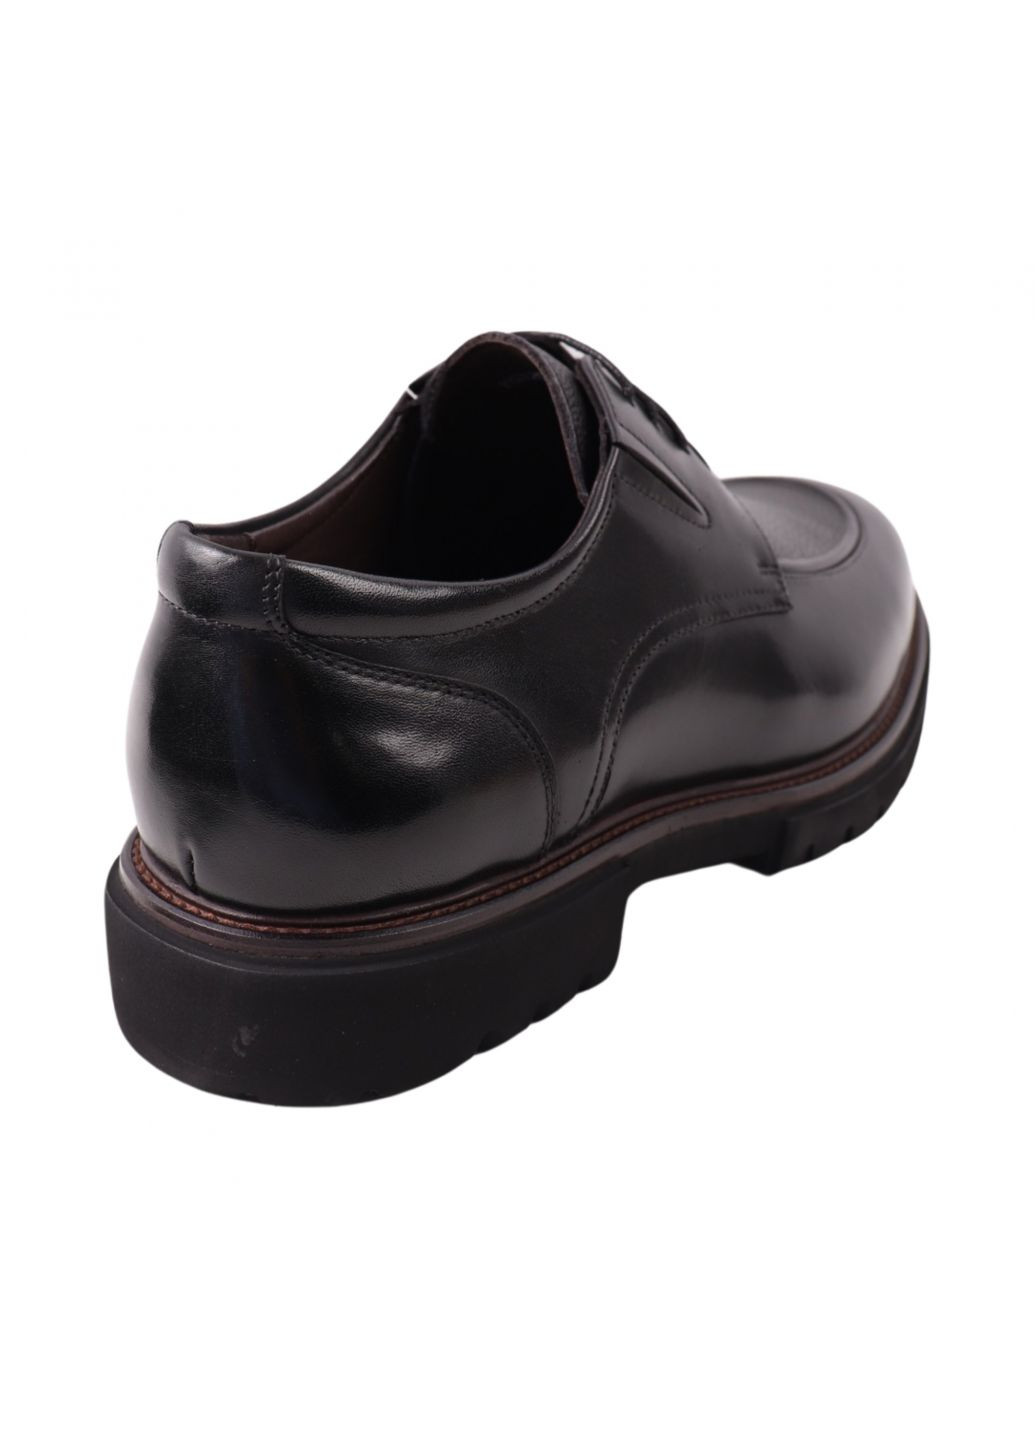 Туфлі чоловічі Lido Marinozi чорні натуральна шкіра Lido Marinozzi 332-23dt (266986617)